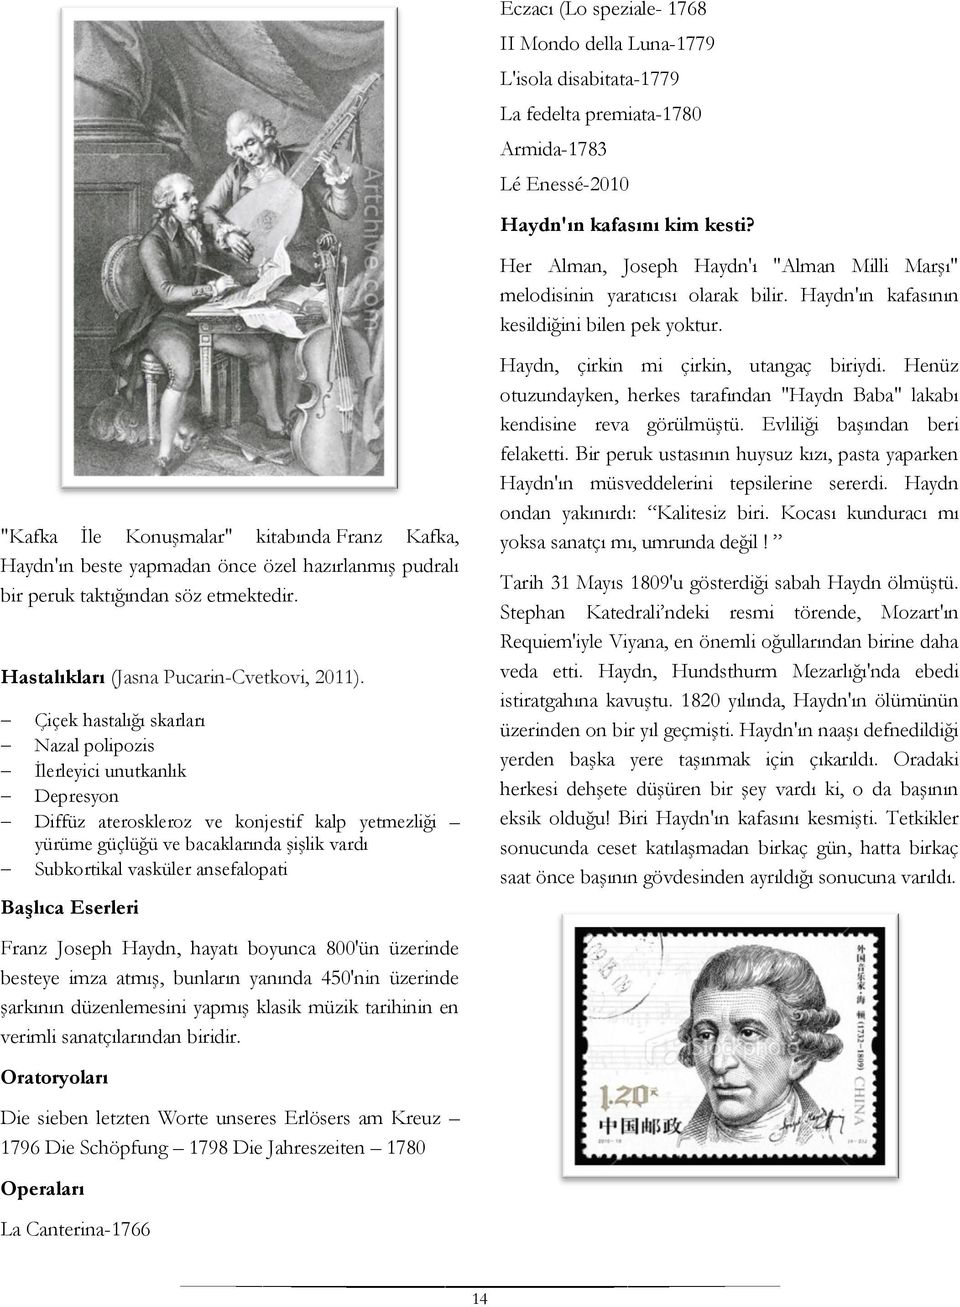 "Kafka İle Konuşmalar" kitabında Franz Kafka, Haydn'ın beste yapmadan önce özel hazırlanmış pudralı bir peruk taktığından söz etmektedir. Hastalıkları (Jasna Pucarin-Cvetkovi, 2011).